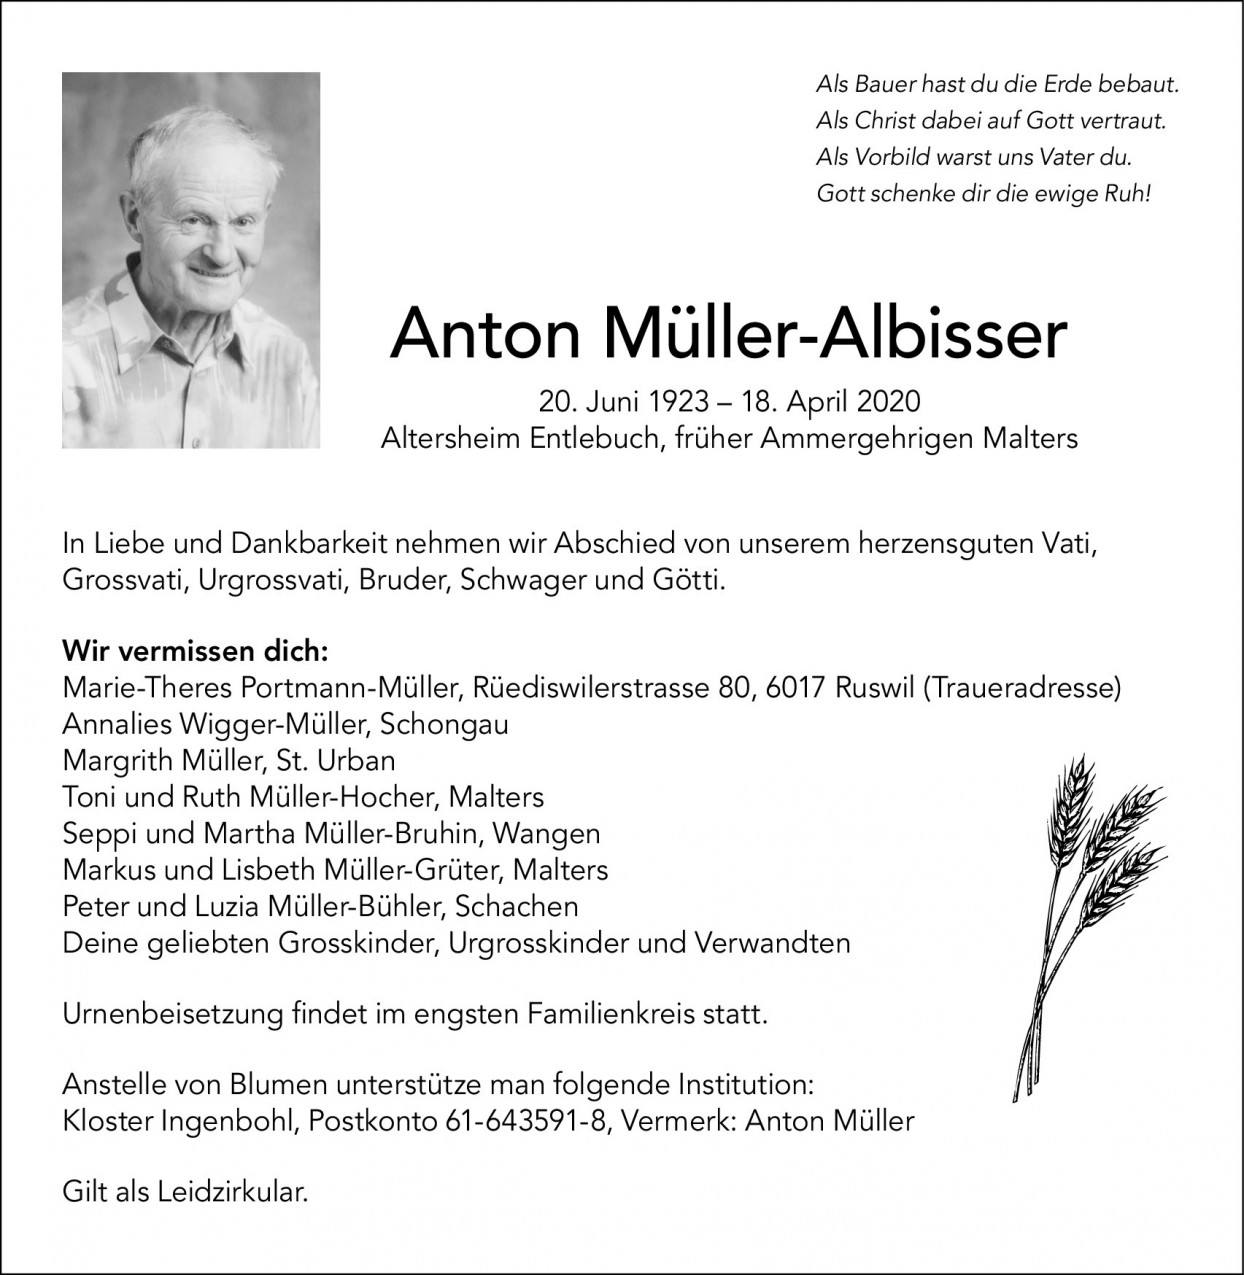 Anton Müller-Albisser